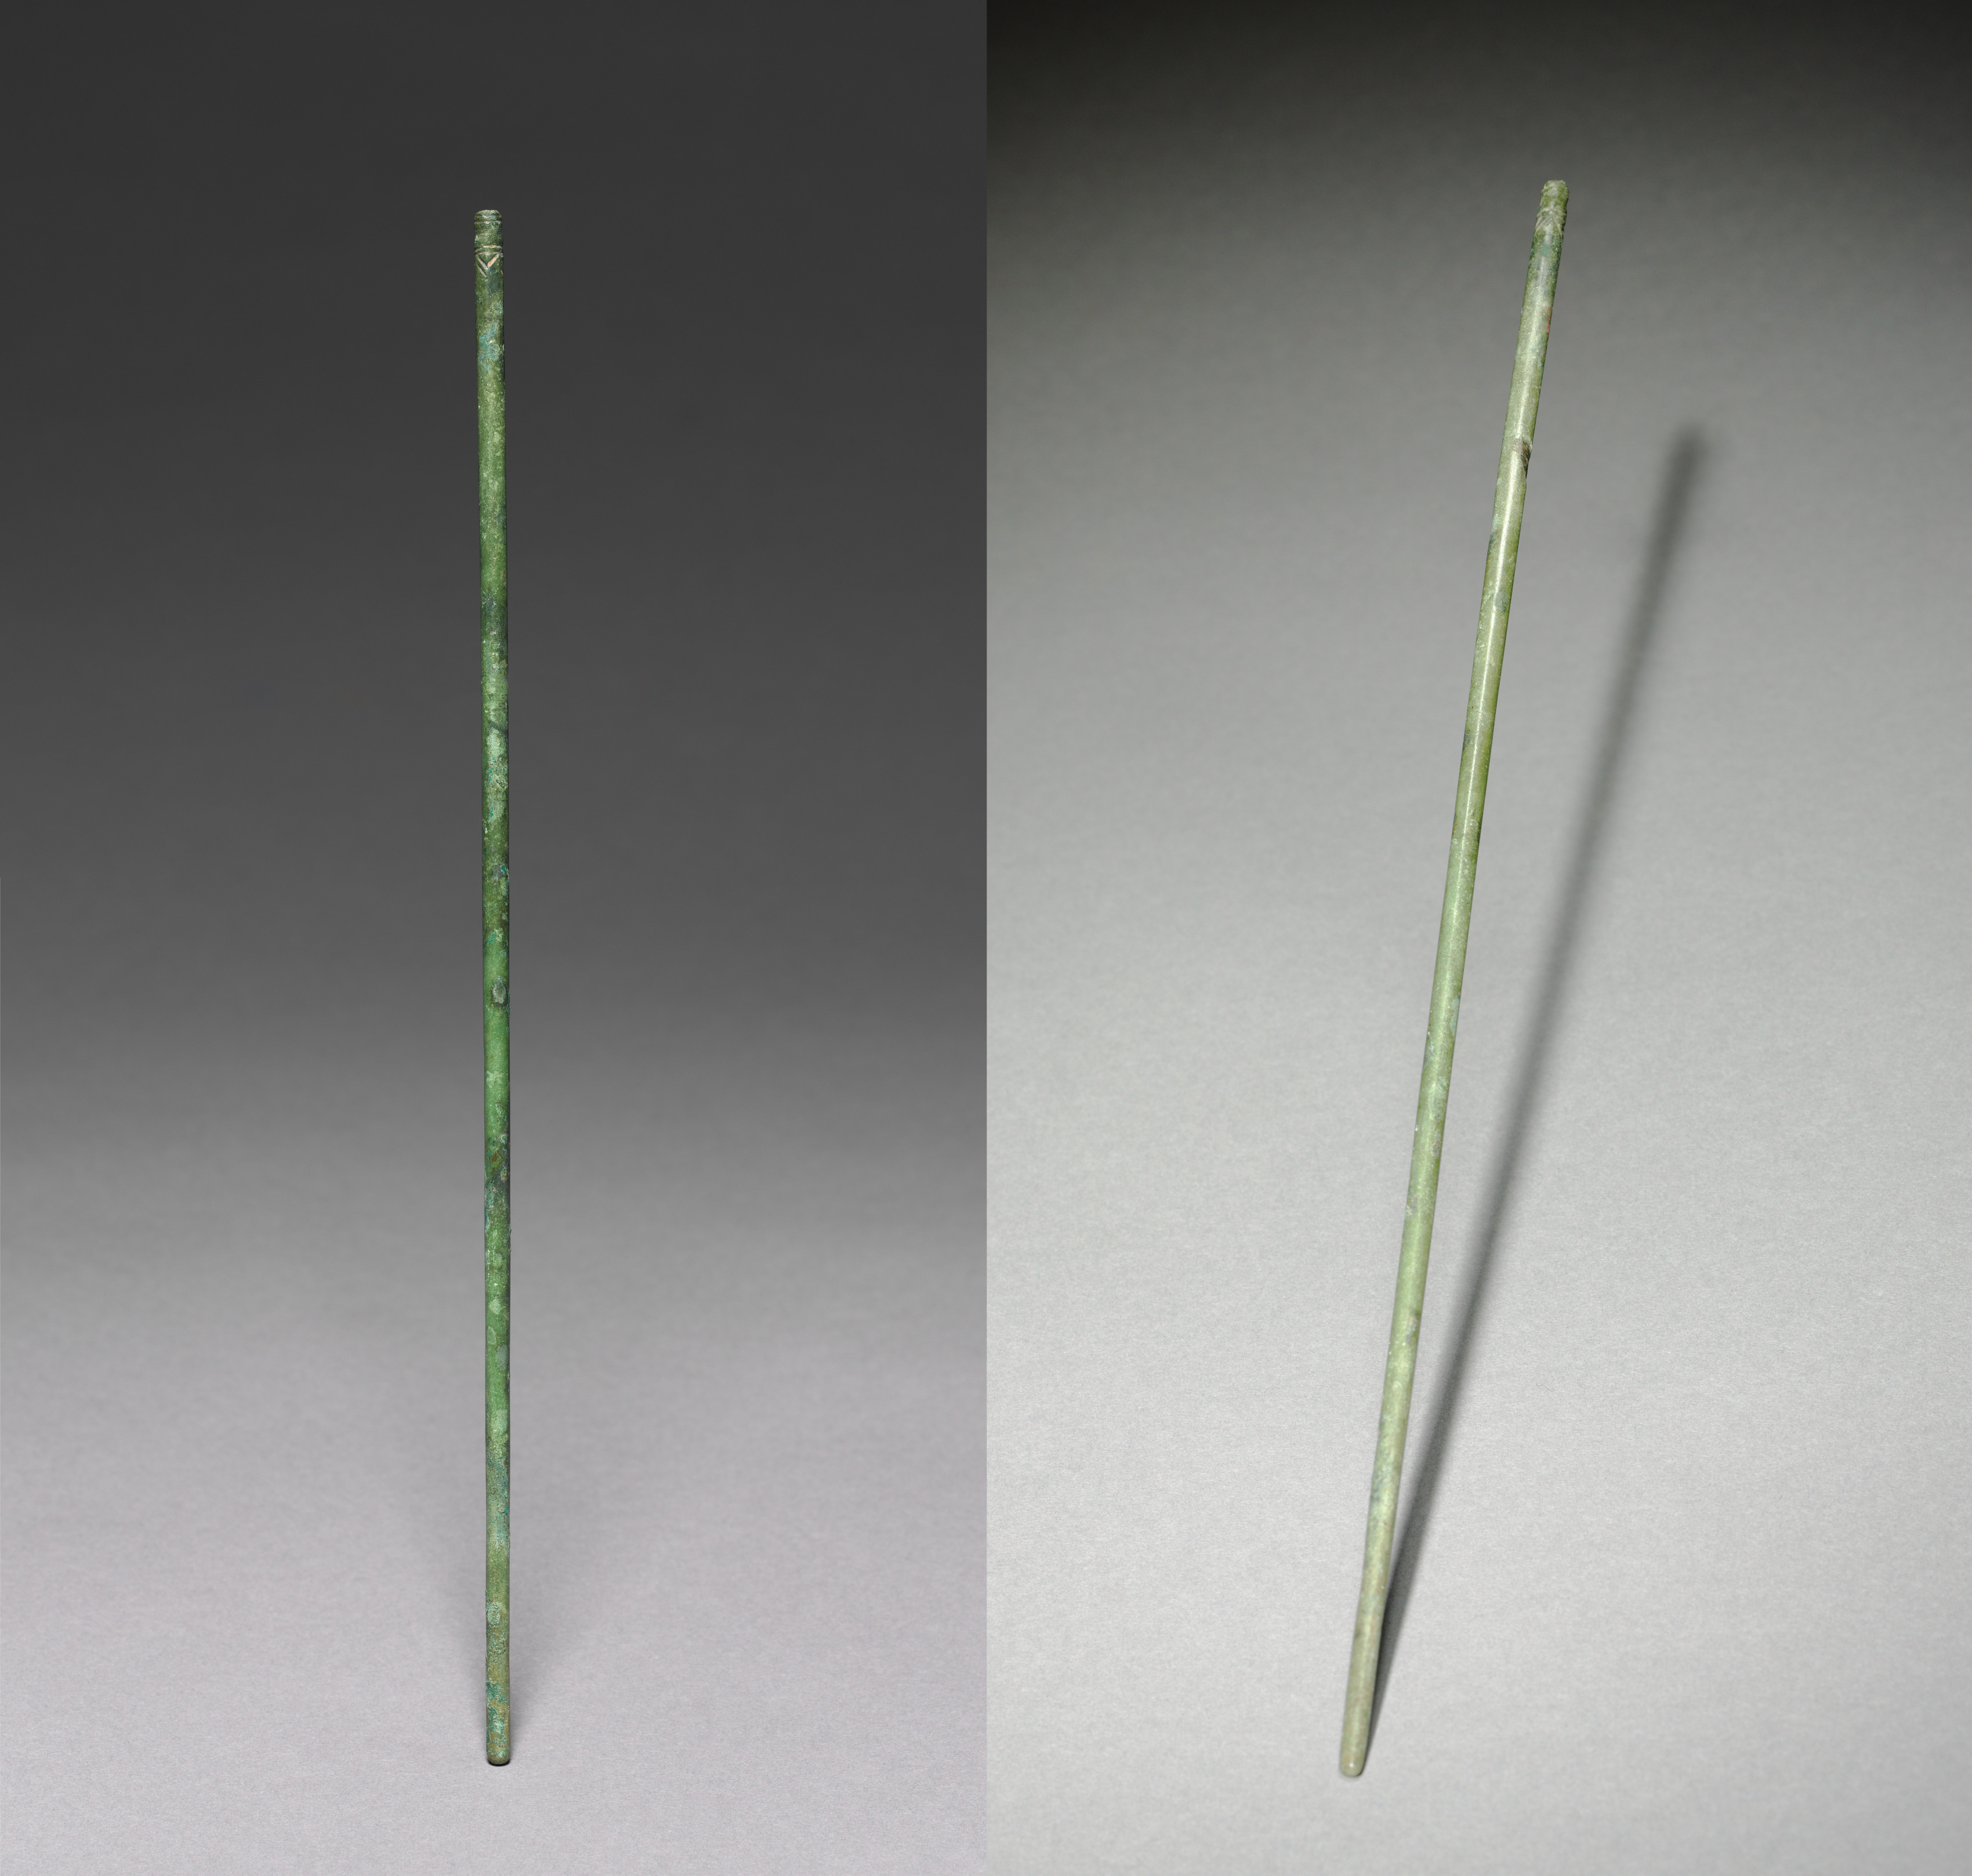 A Pair of Chopsticks